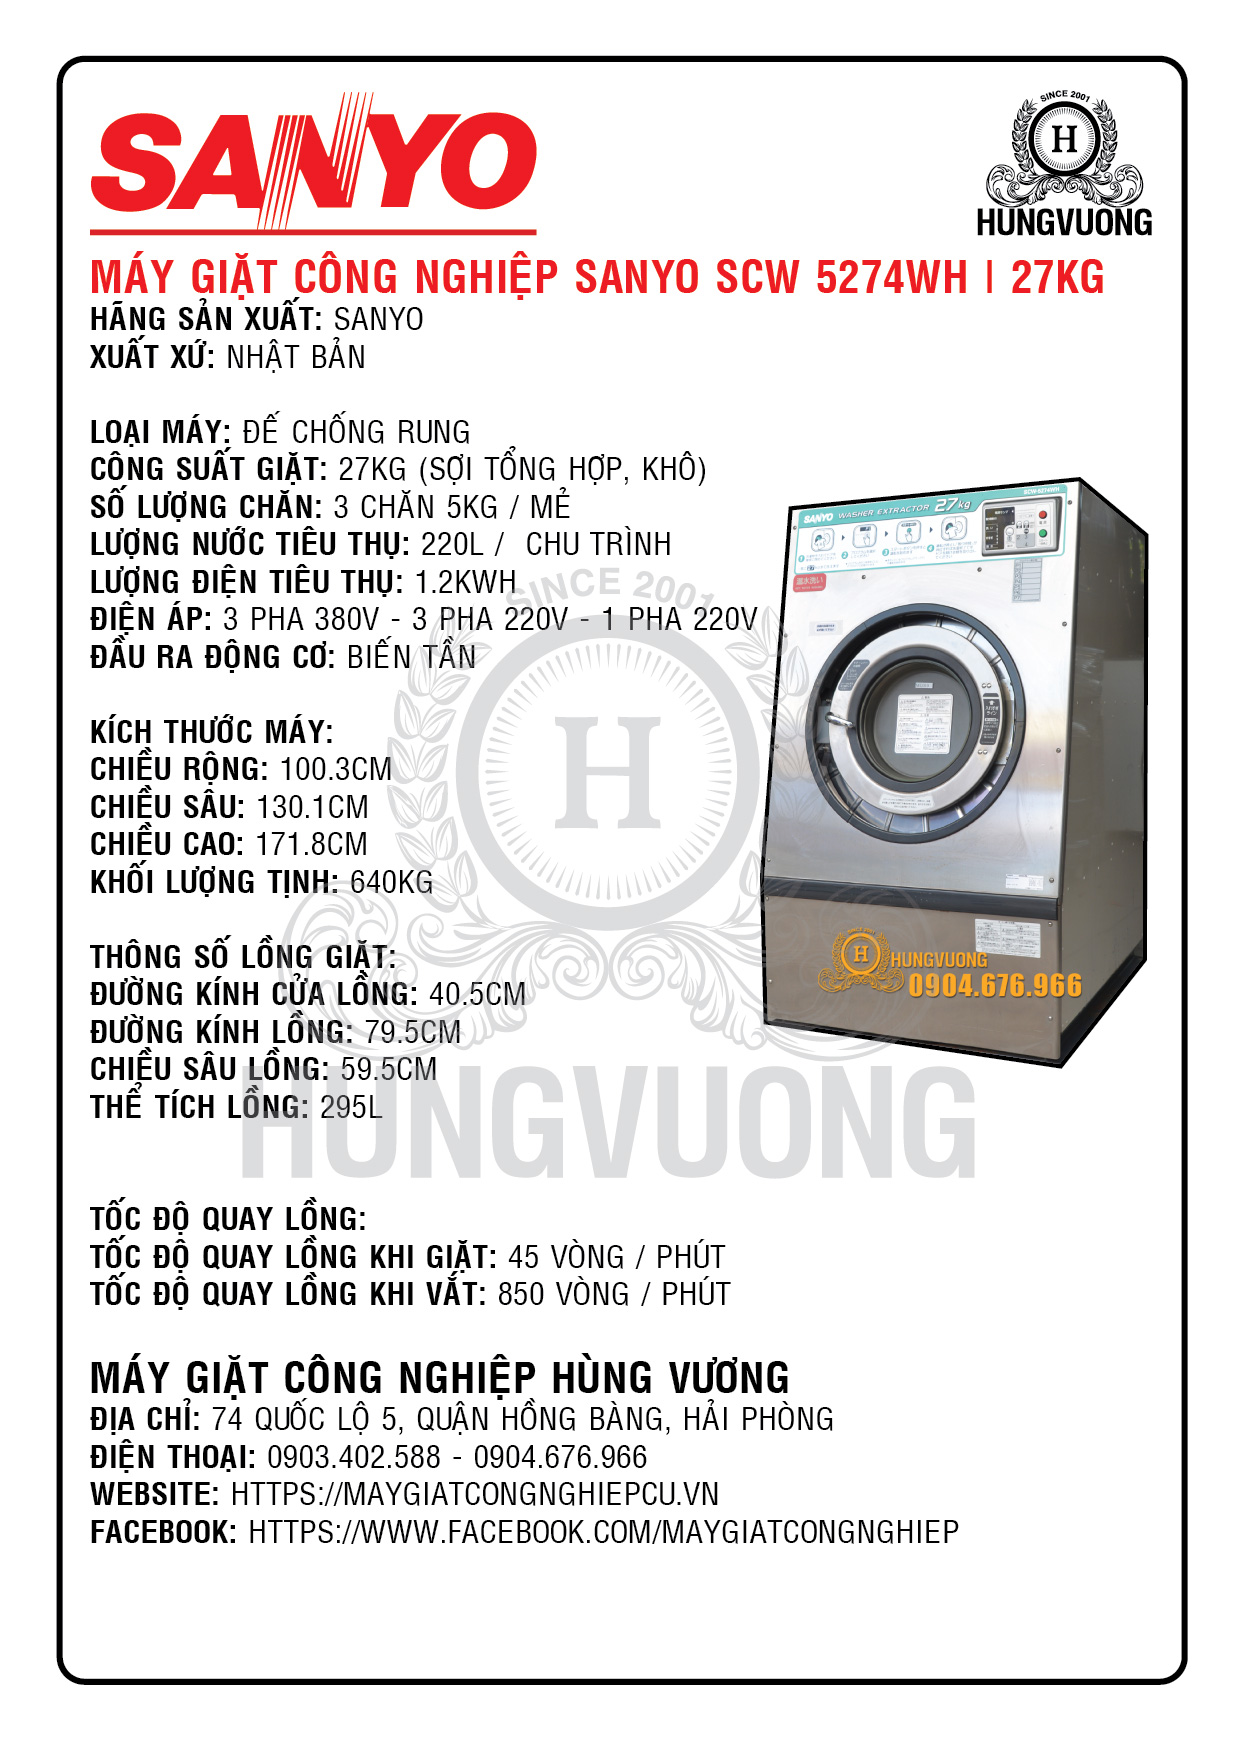 Thông số kỹ thuật máy giặt công nghiệp SANYO SCW 5274WWH, 27kg, chống rung, biến tần, Nhật Bản